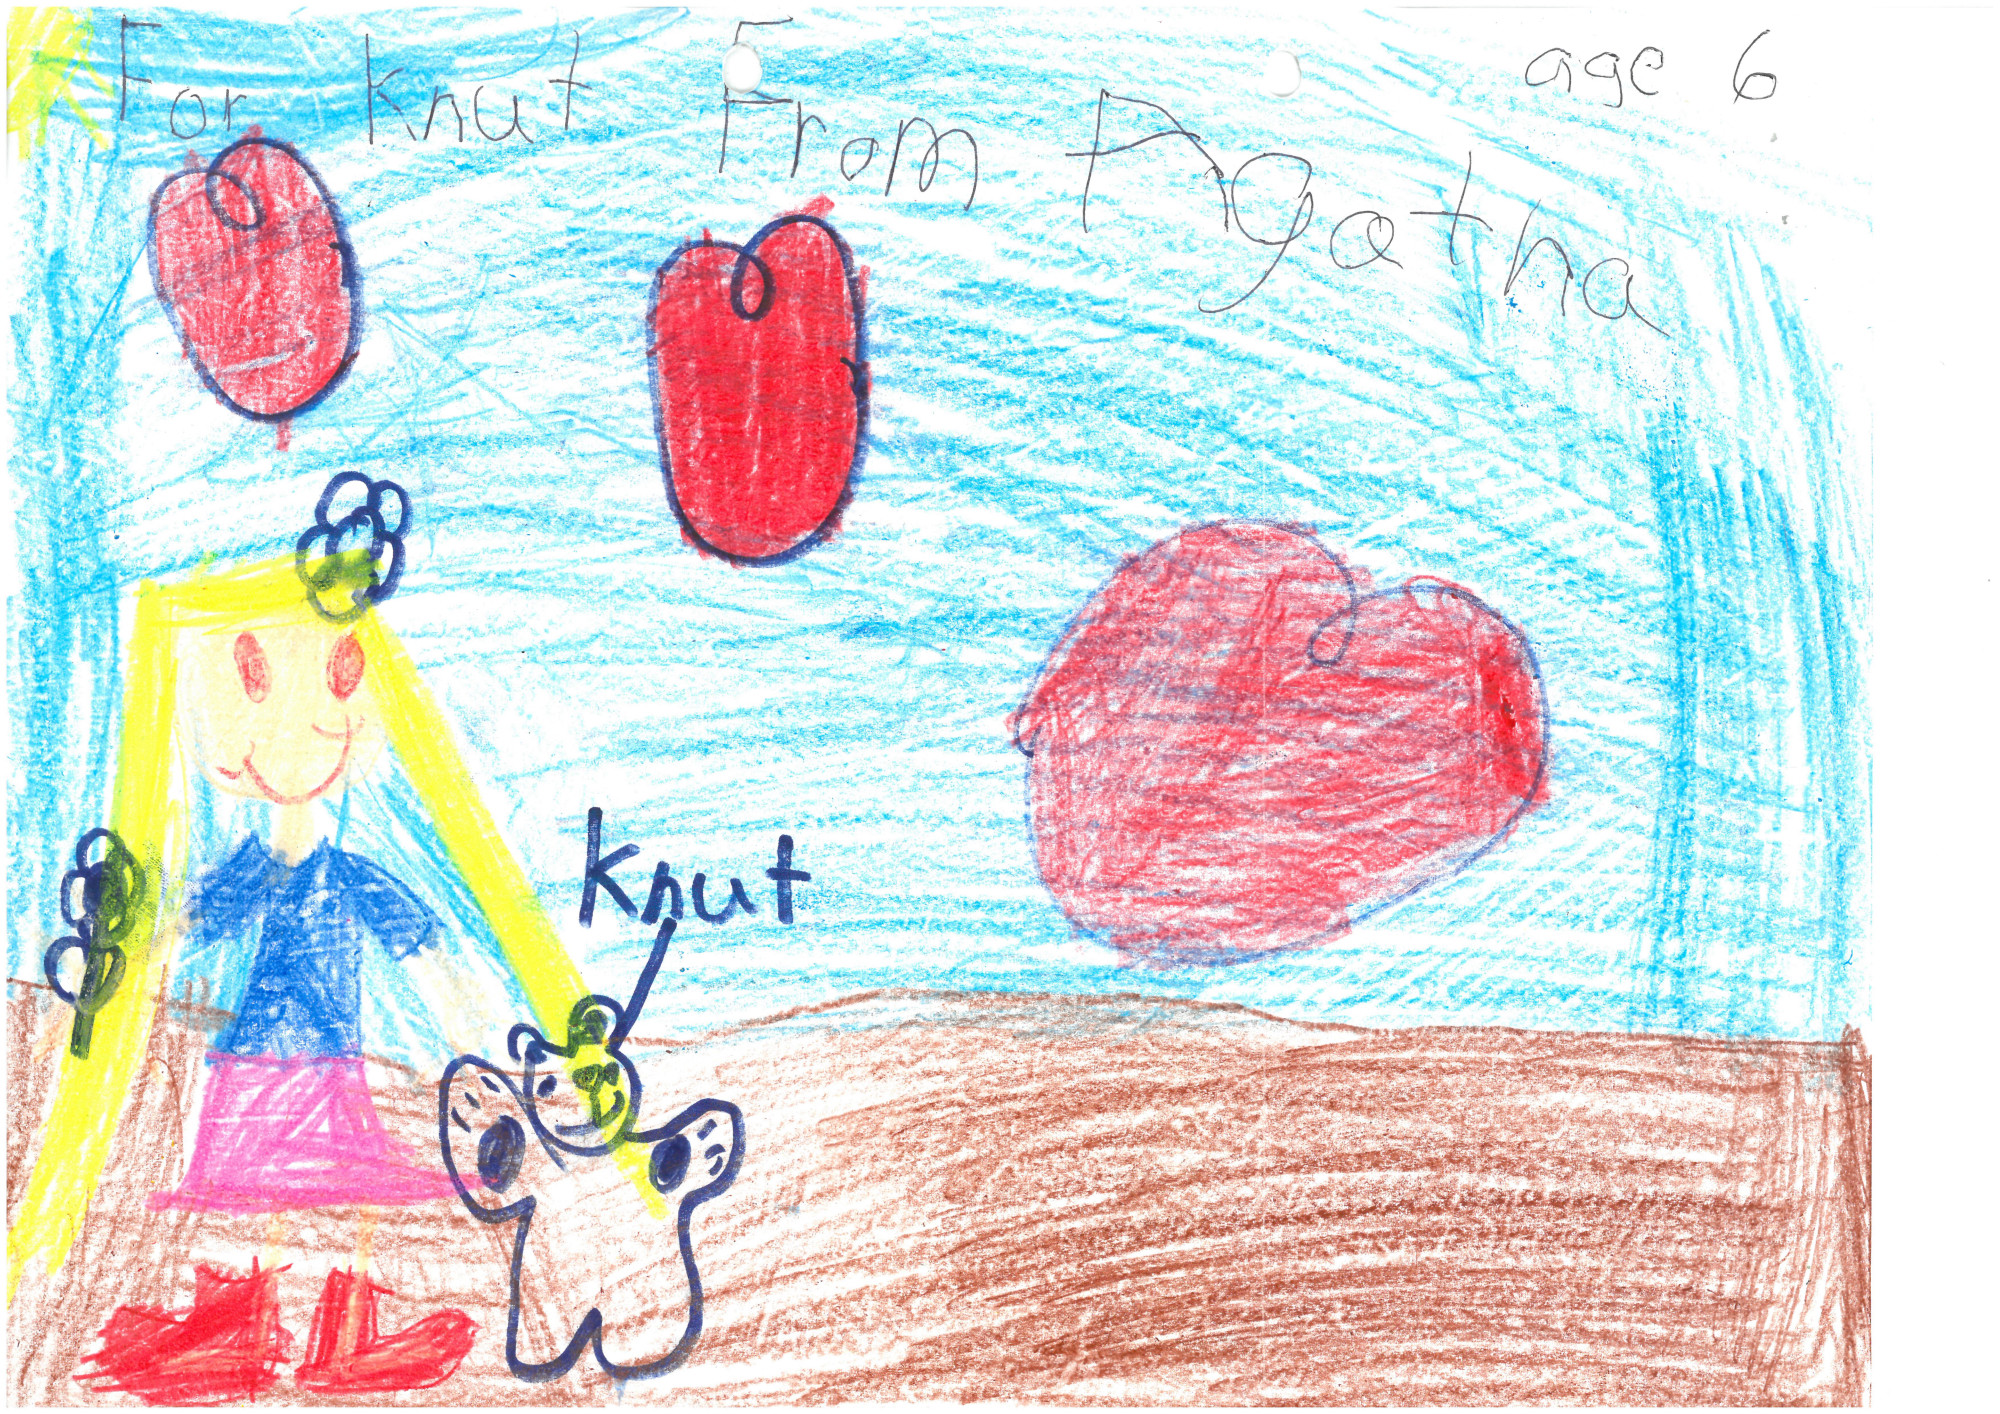 Bunte Kinderzeichnung: Ein Eisbär mit dem Label "Knut" steht neben einem Kind mit blonden, langen Haaren. Darüber schweben drei große, rundliche Herzen.